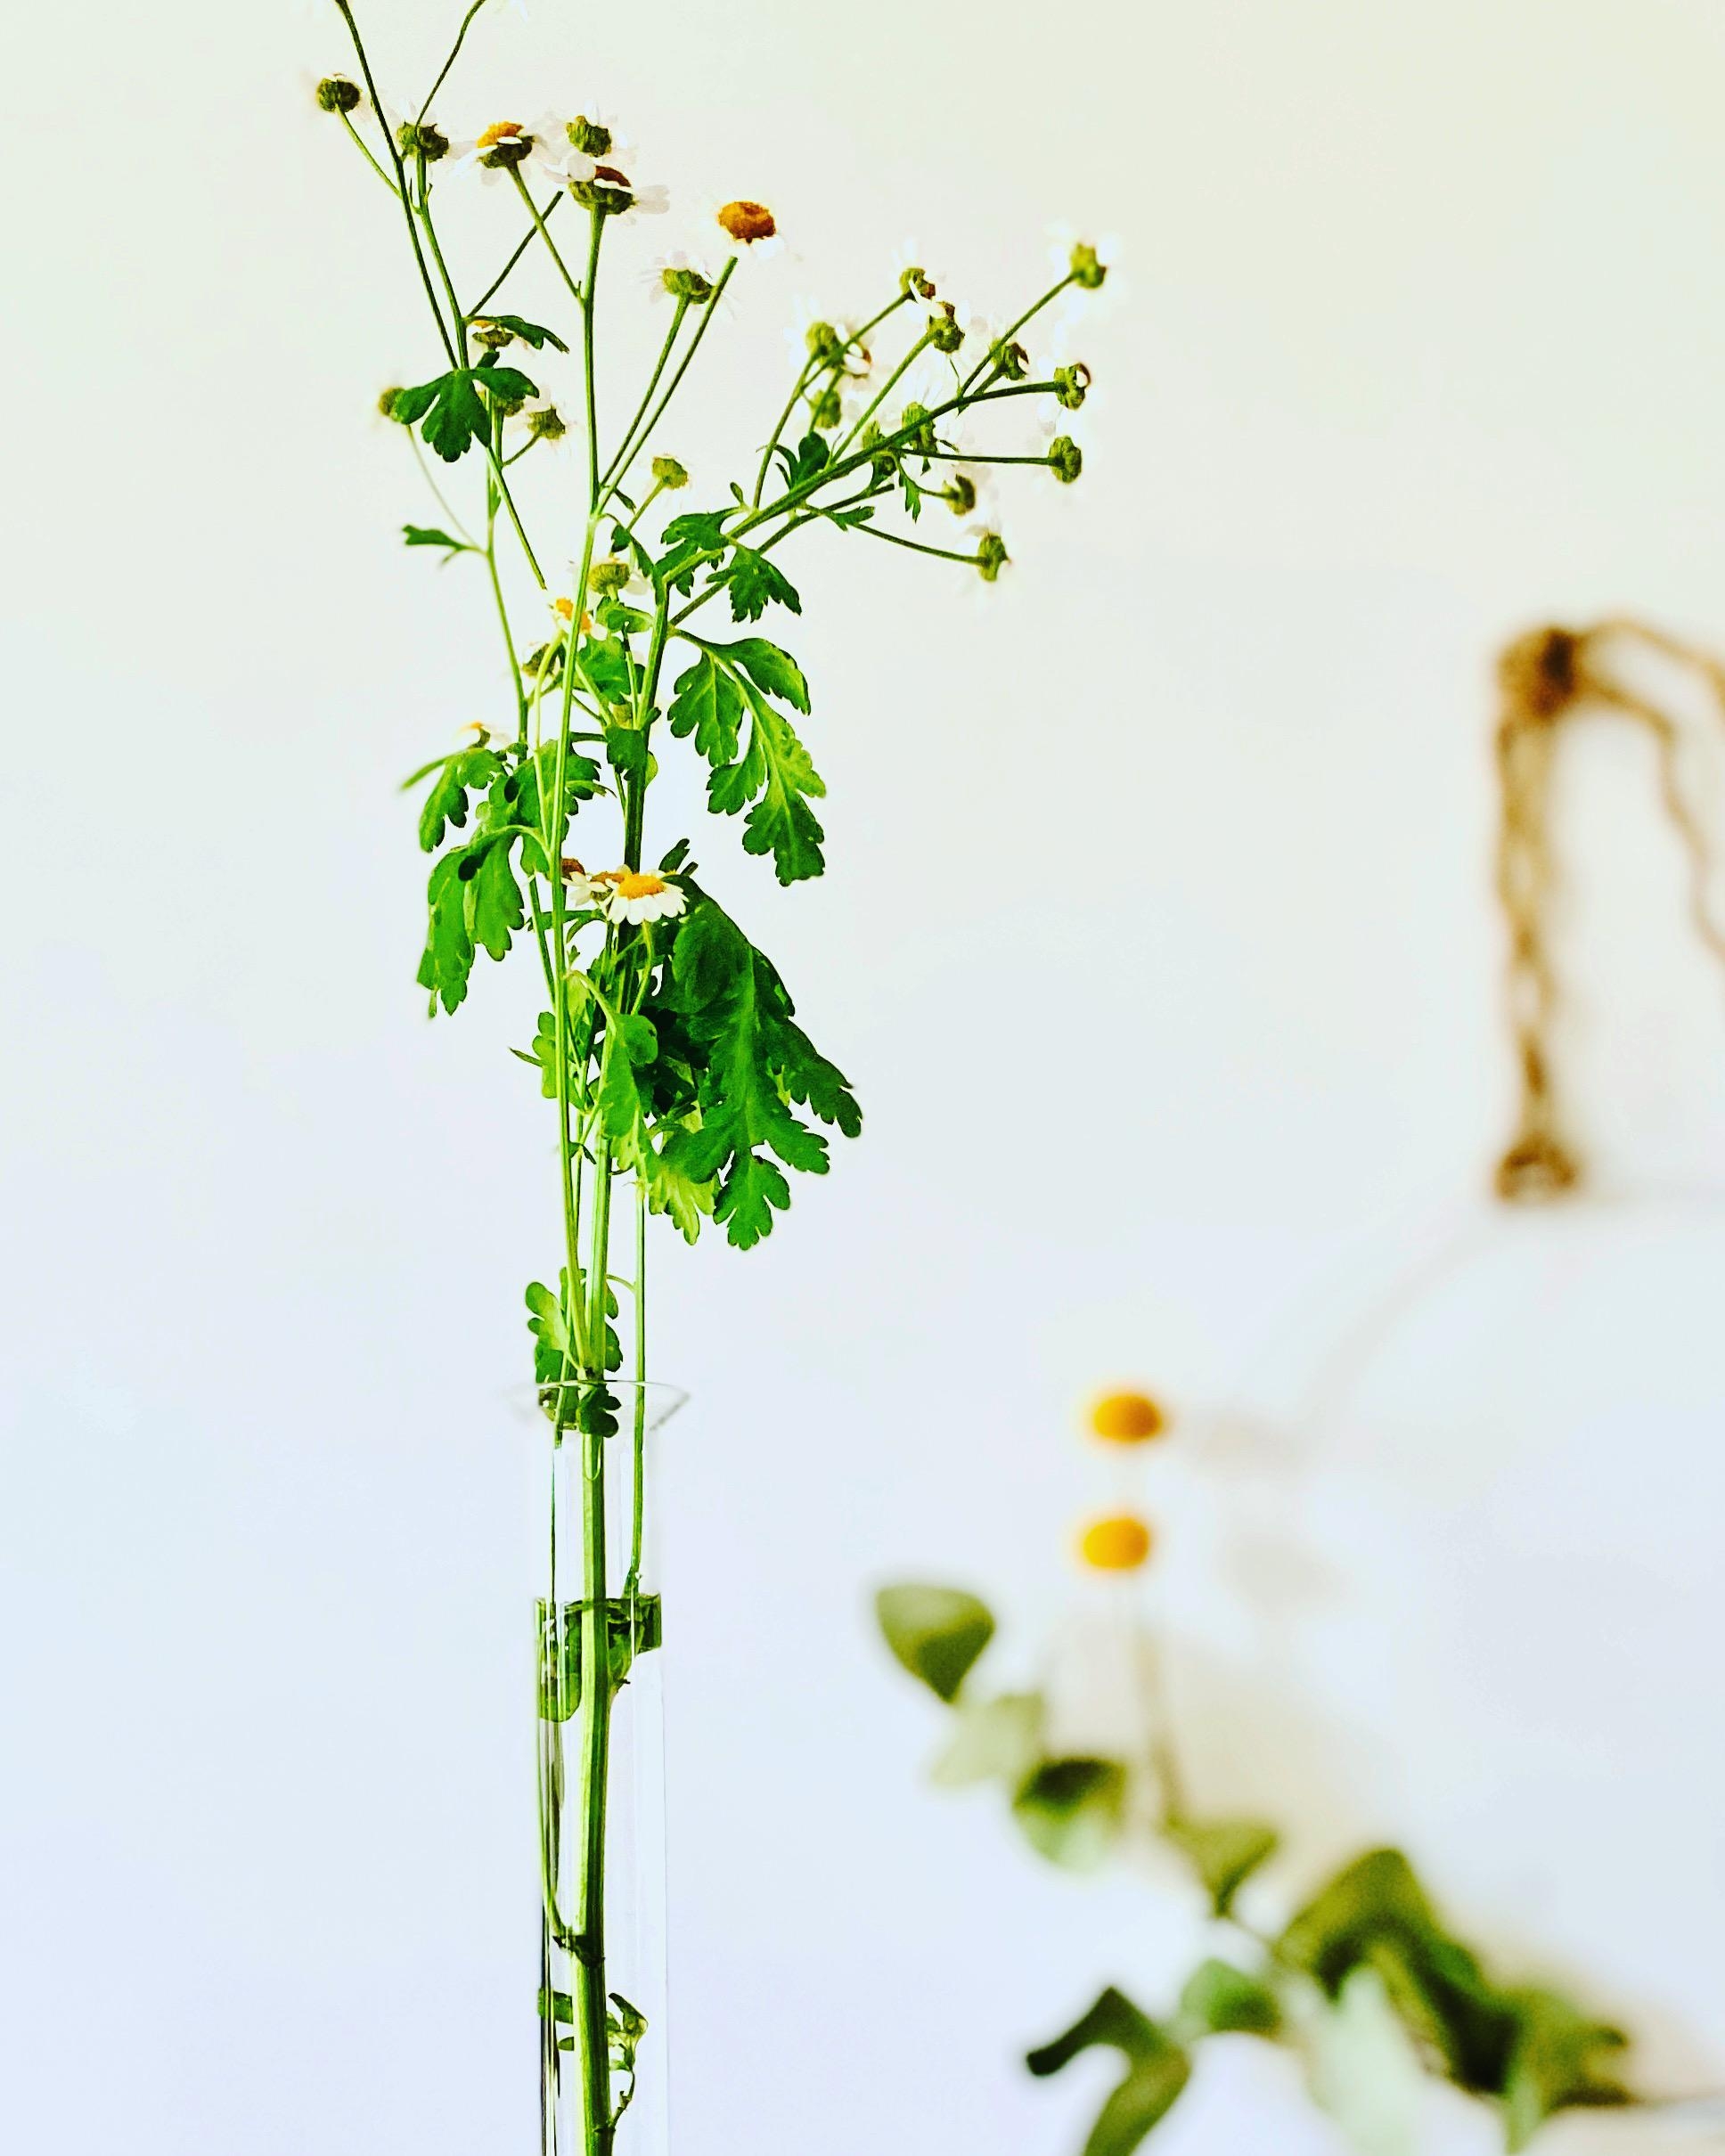 Klein und fein | Blumendeko ...
#blumenliebe #minimalistisch #margeriten #kranzliebe #vasenliebe #vasenhighlight